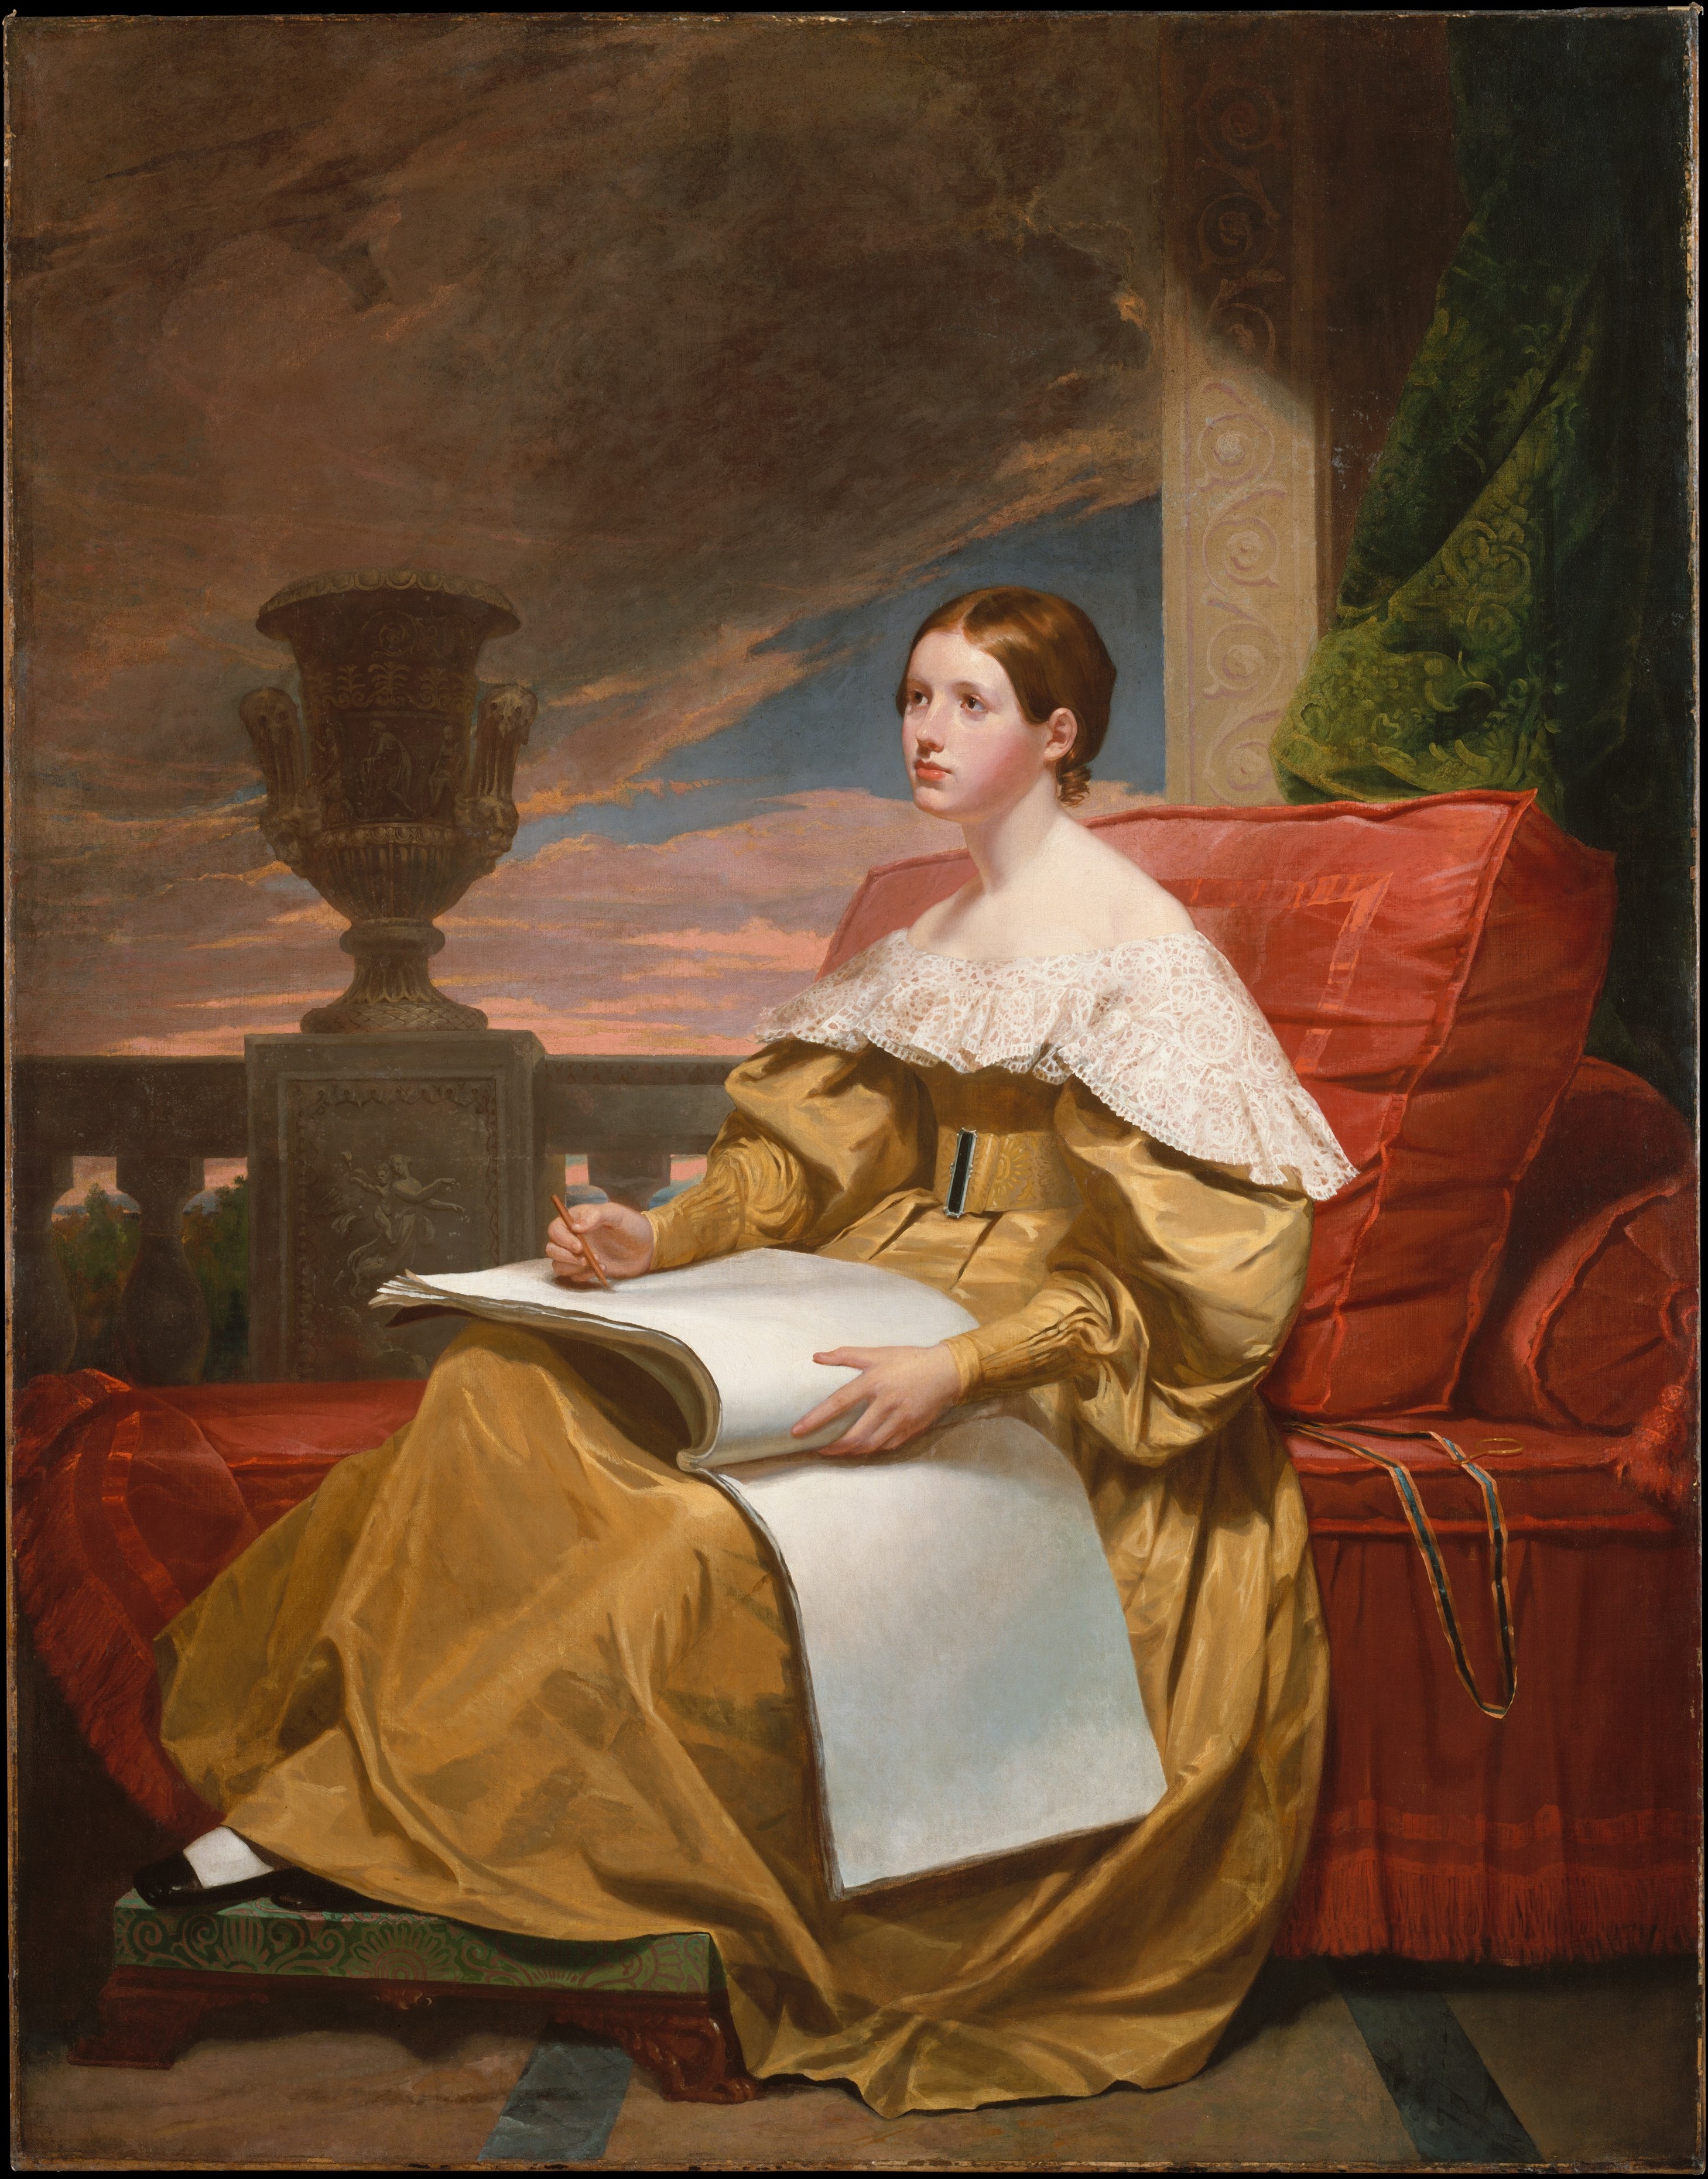 Σούζαν Γουόκερ Μορς (Η Μούσα) by Samuel F. B. Morse - περίπου 1836–37 - 187,3 x 146,4 εκ. 